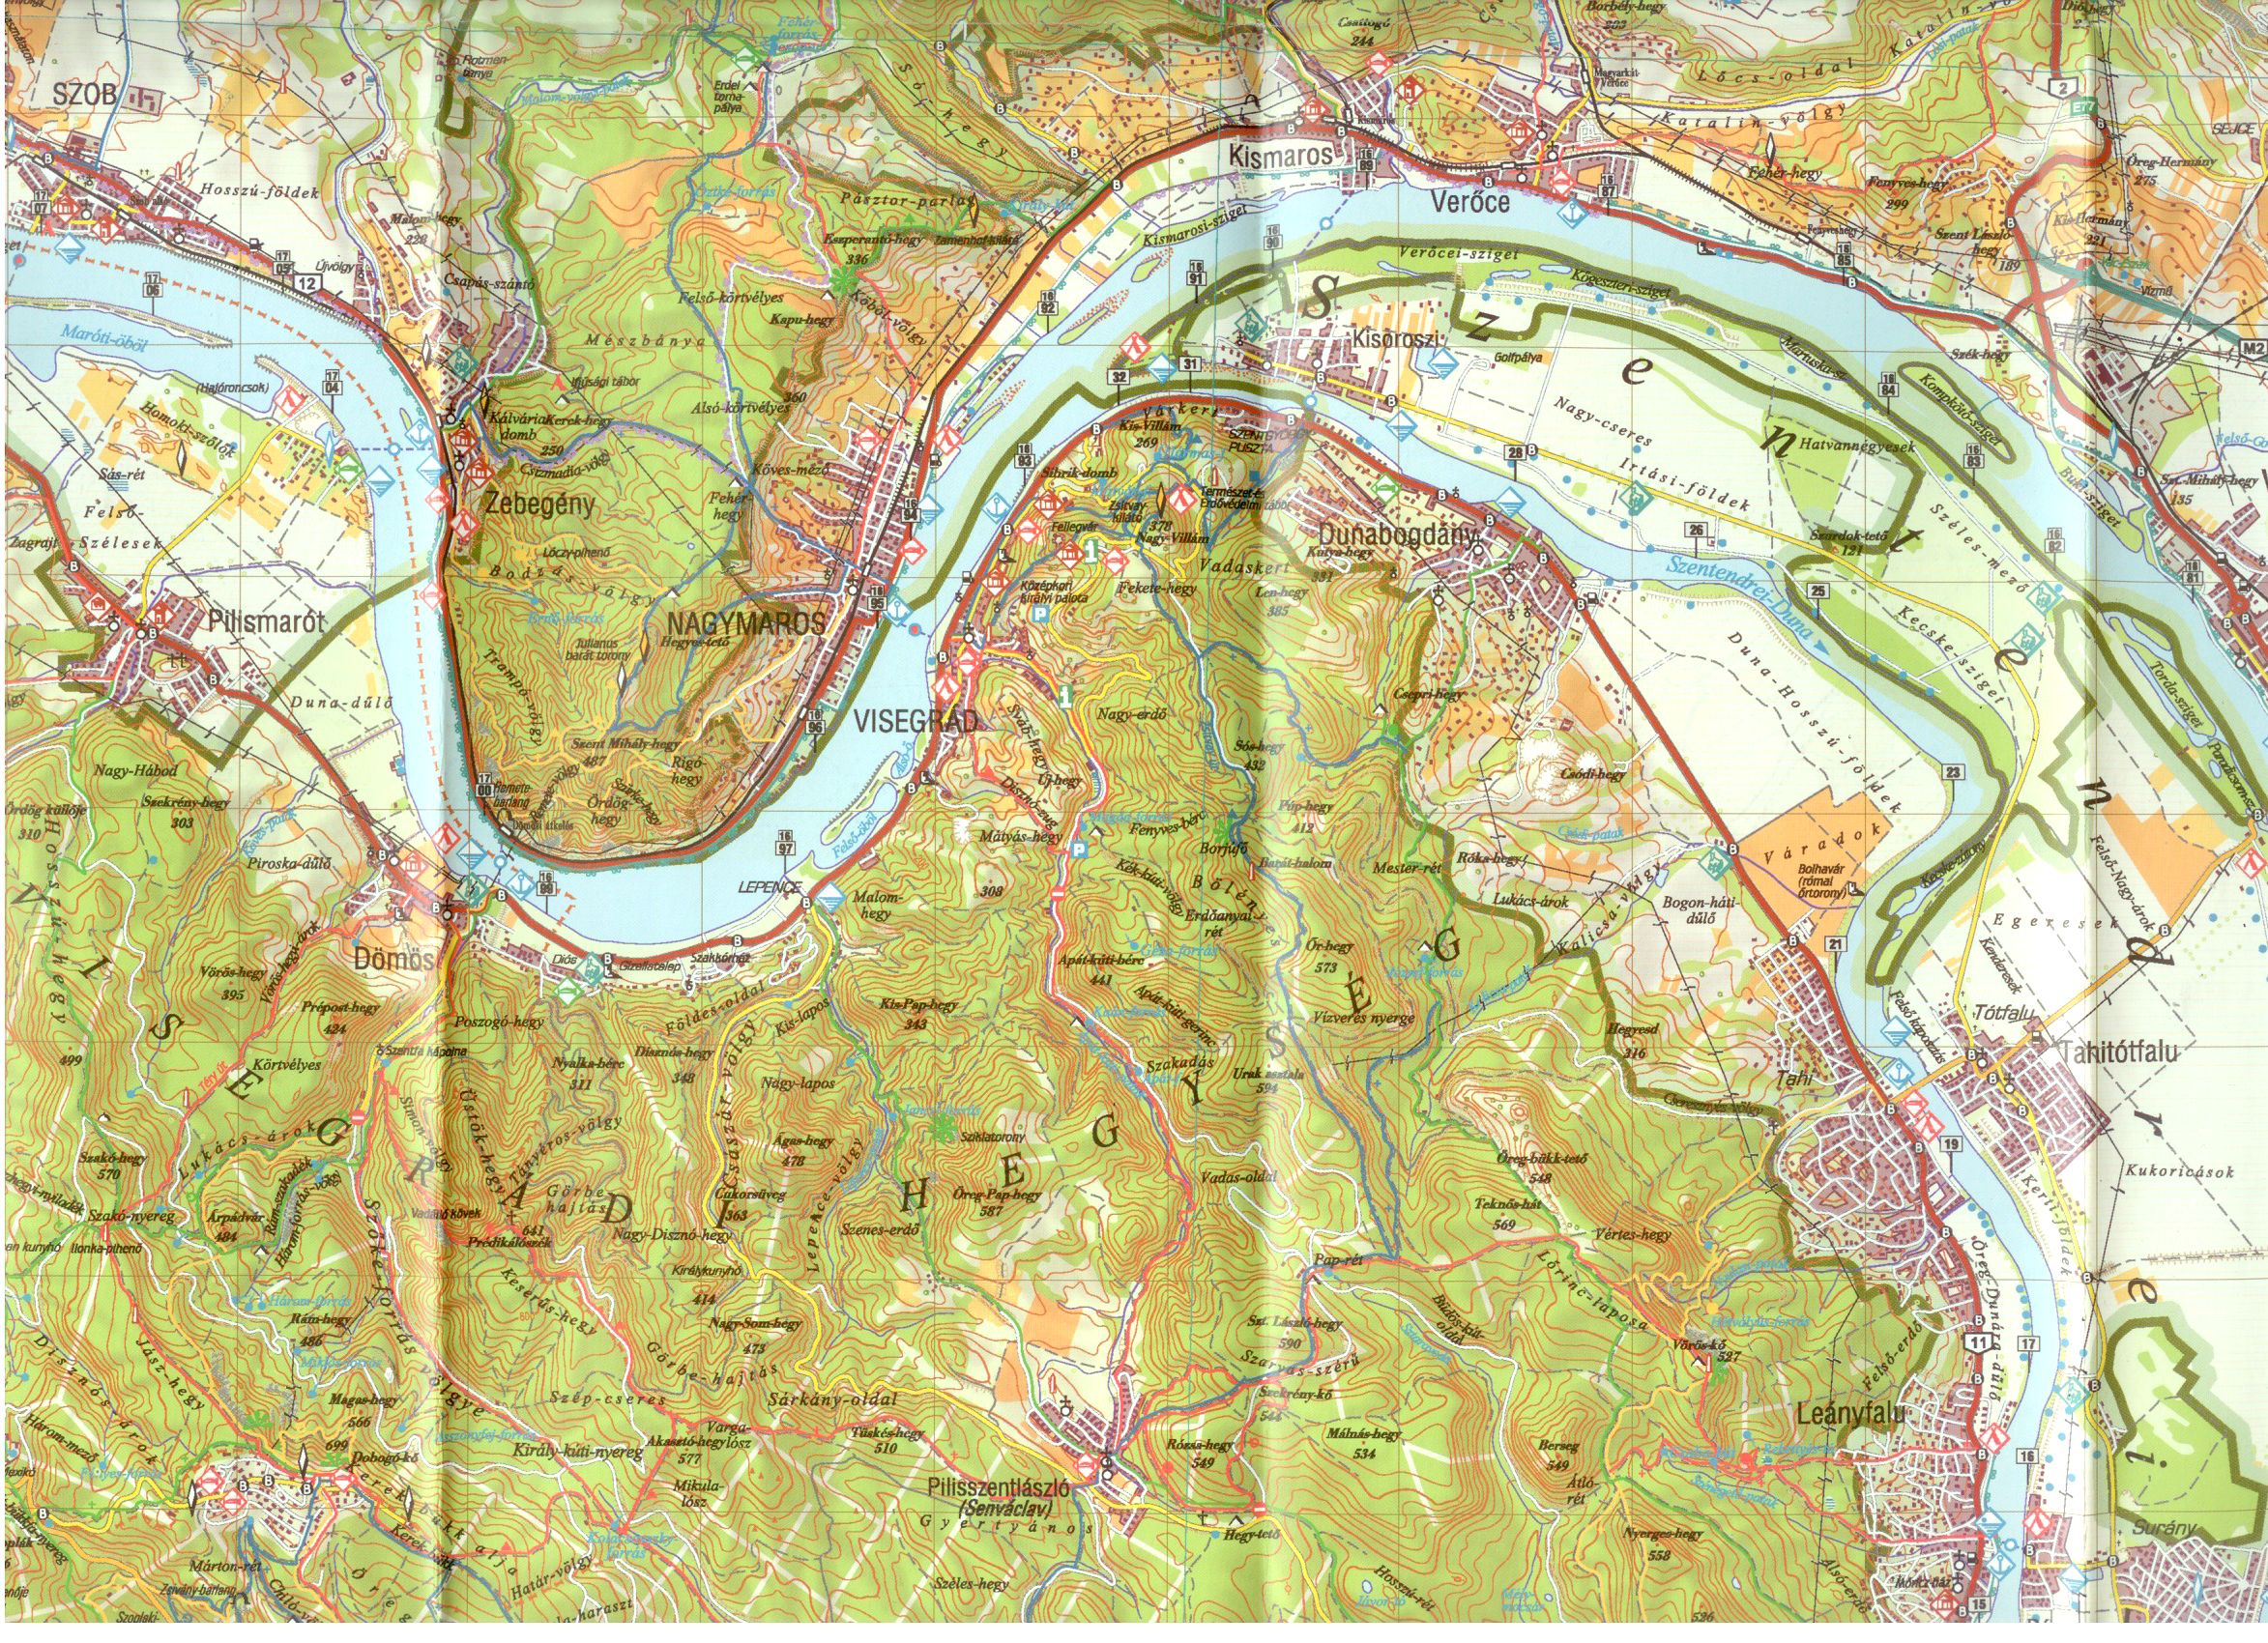 Danube-Ipel (Ipoly) NP map sample